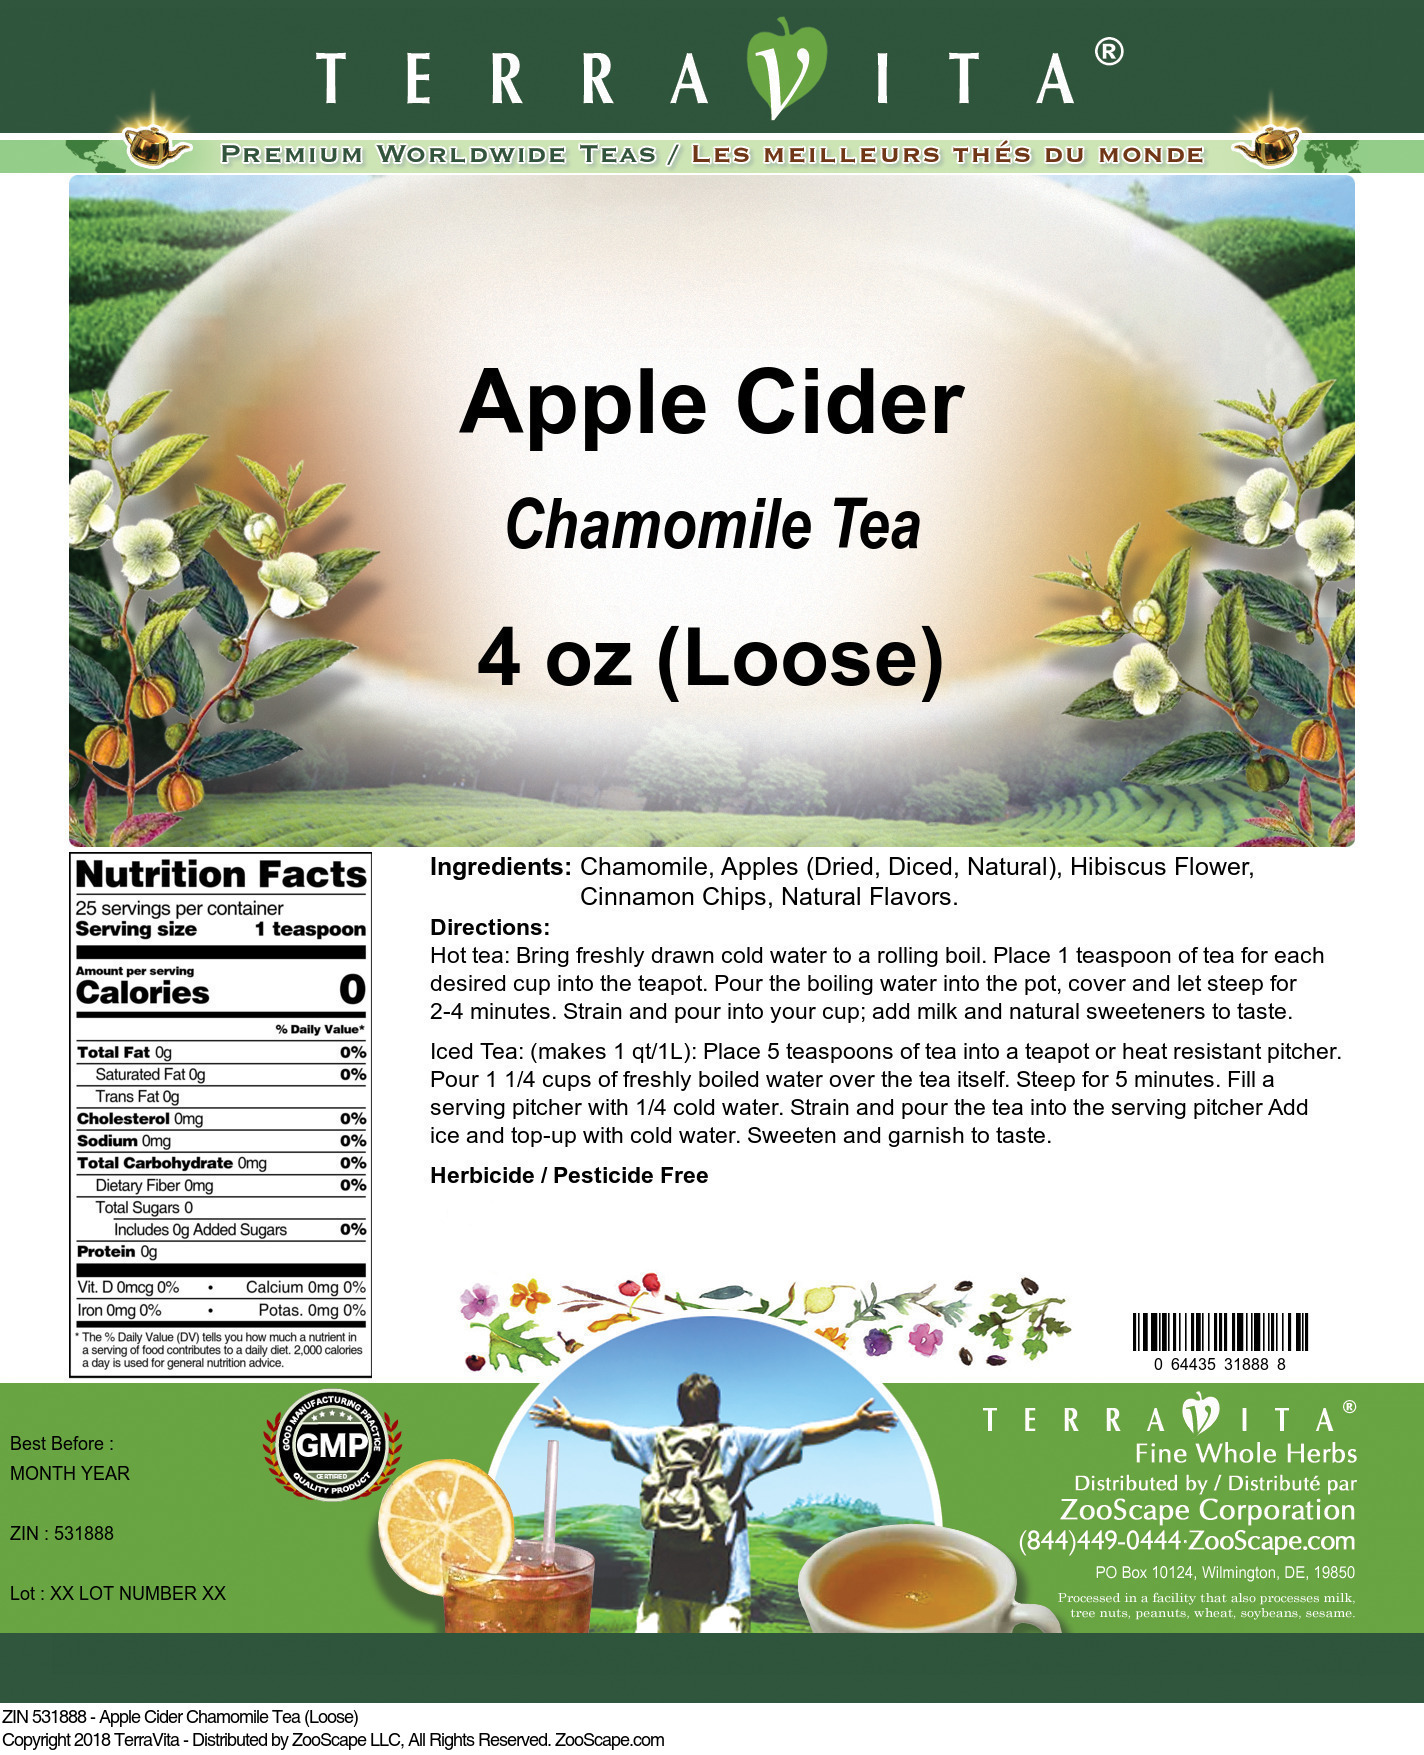 Apple Cider Chamomile Tea (Loose) - Label